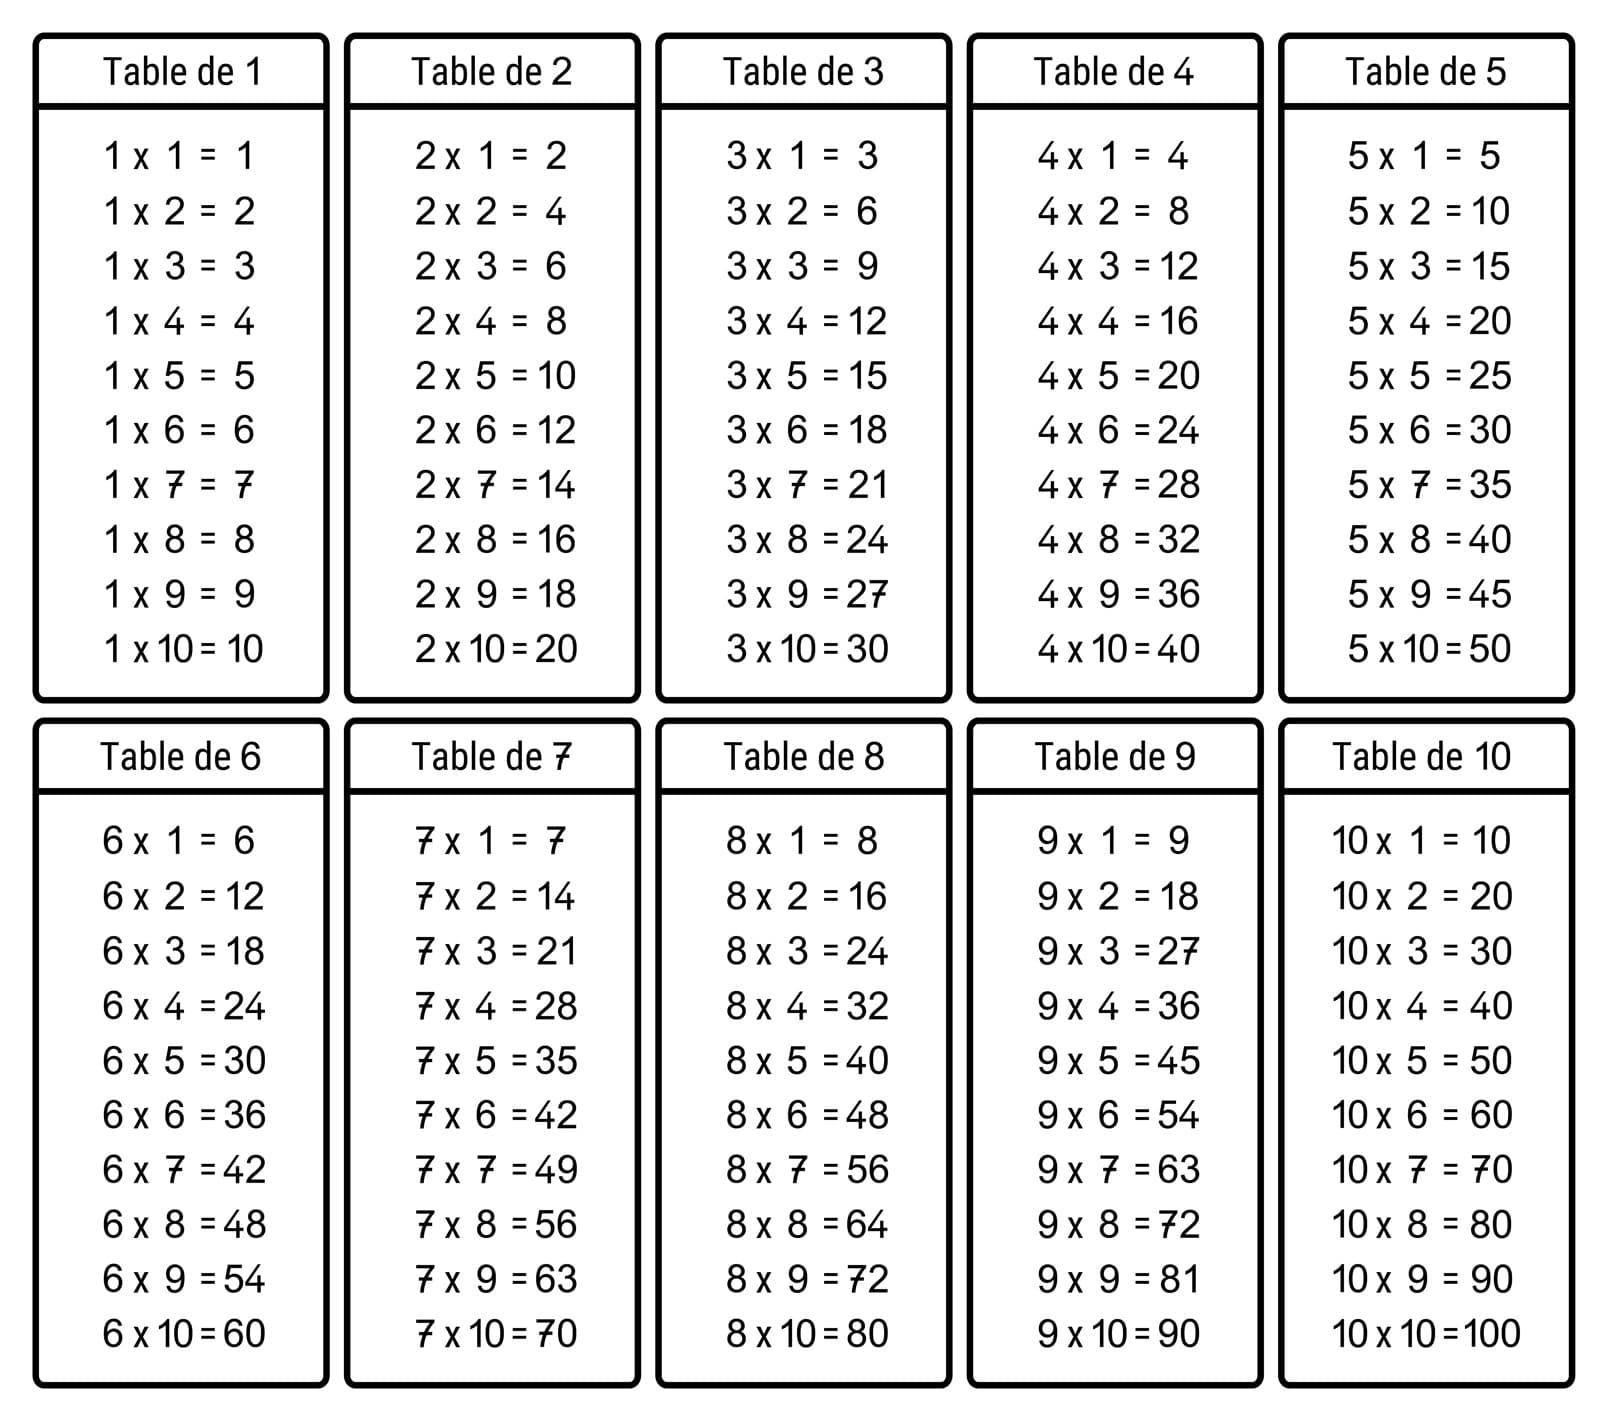 feuille référence - tables de multiplication